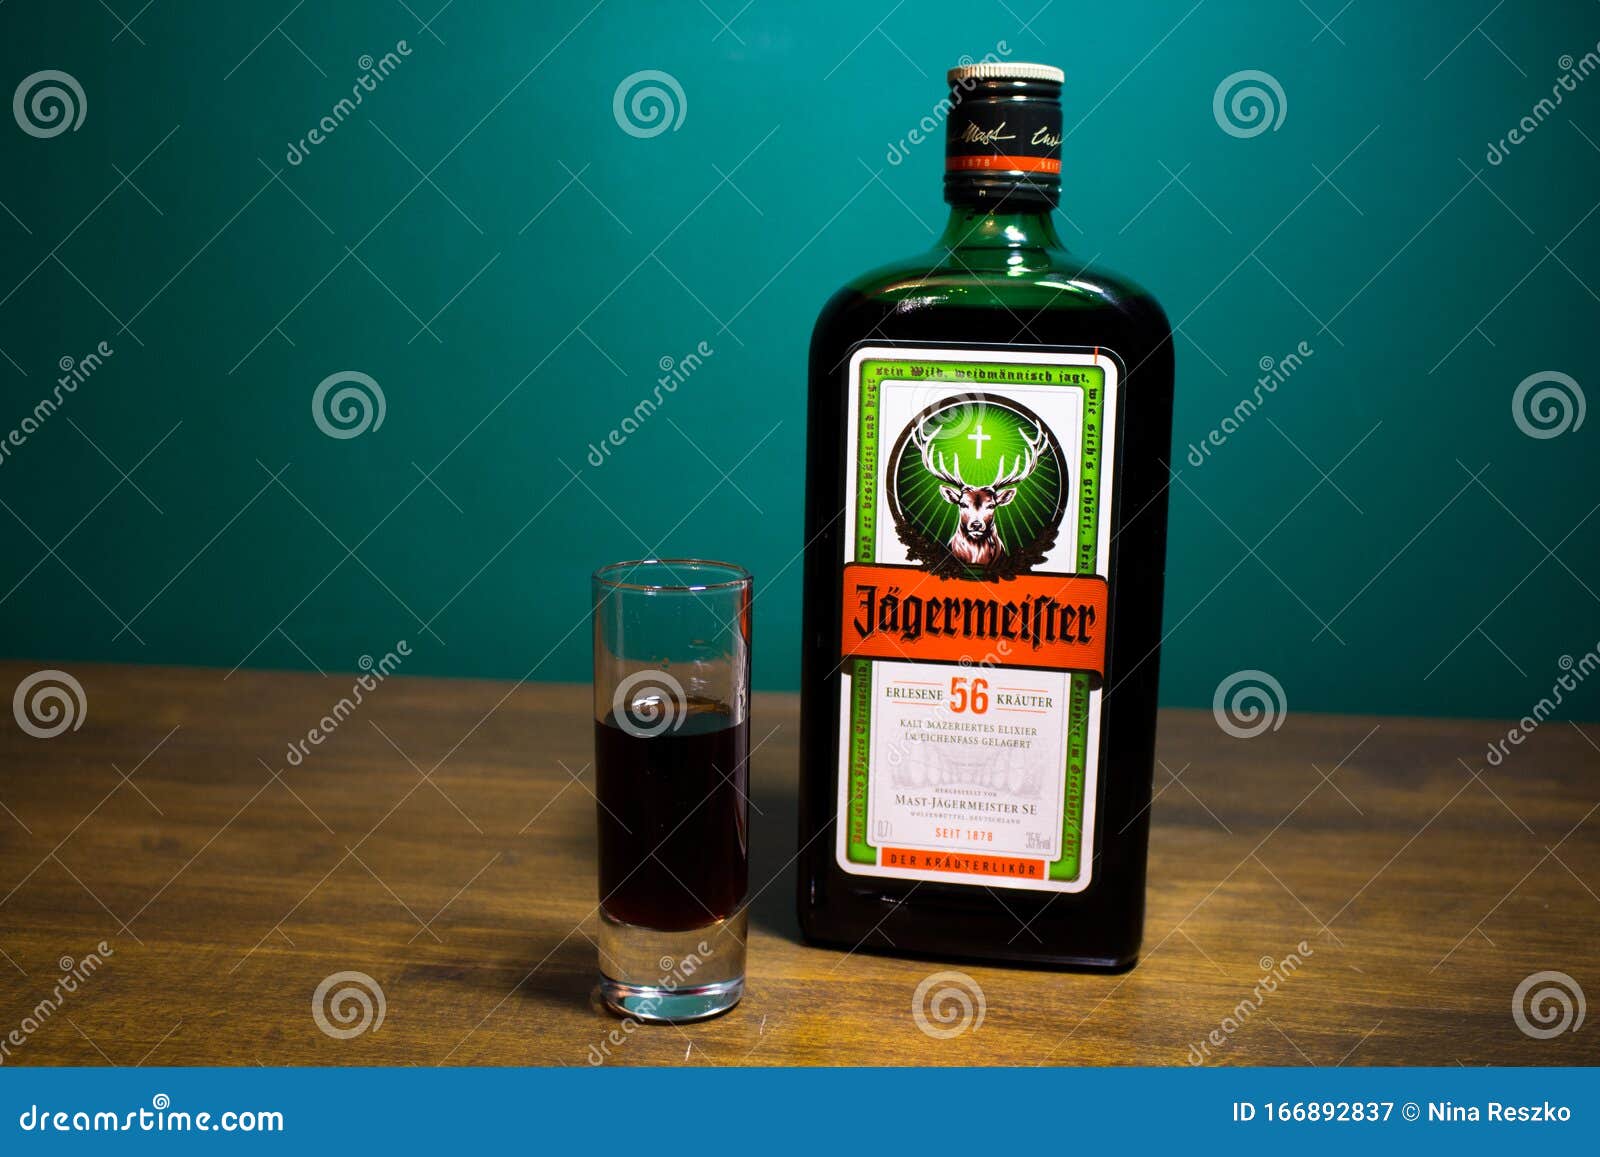 https://thumbs.dreamstime.com/z/flacon-de-verre-d-alcool-jagermeister-digestif-allemand-fait-avec-herbes-et-%C3%A9pices-liqueur-166892837.jpg